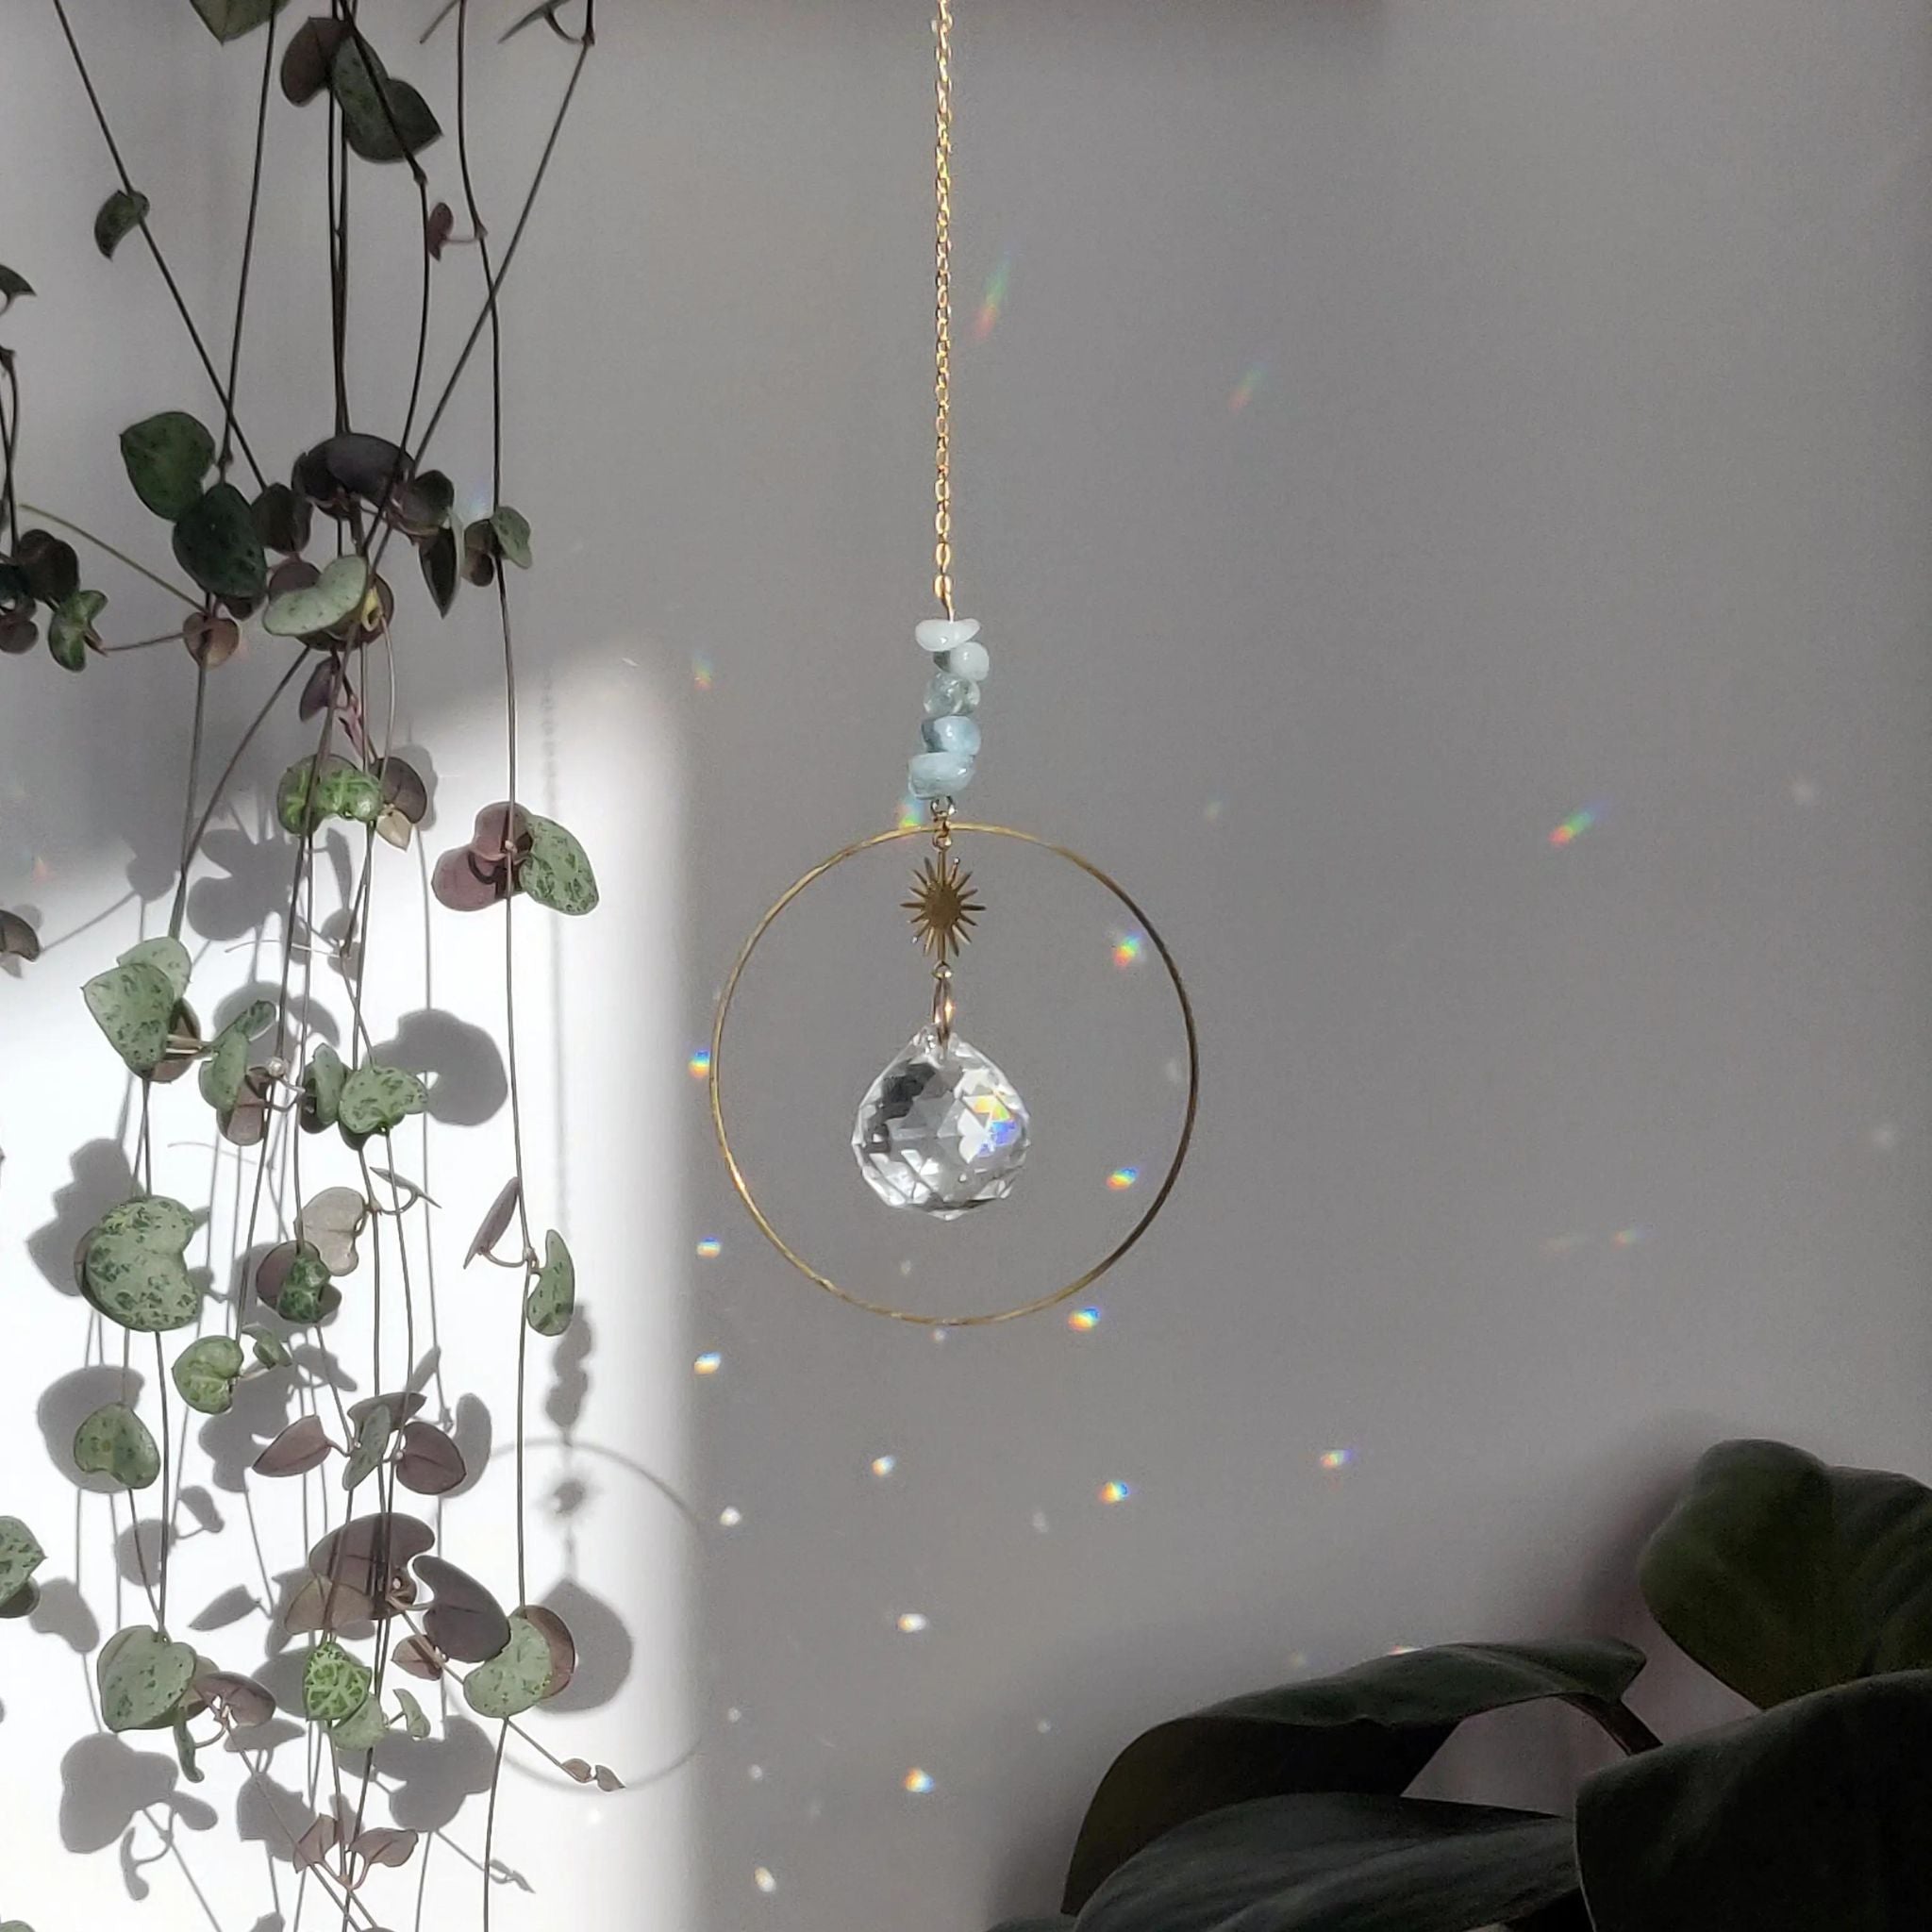 ATTRAPE SOLEIL - Lune magique – Atelier Aiyanna